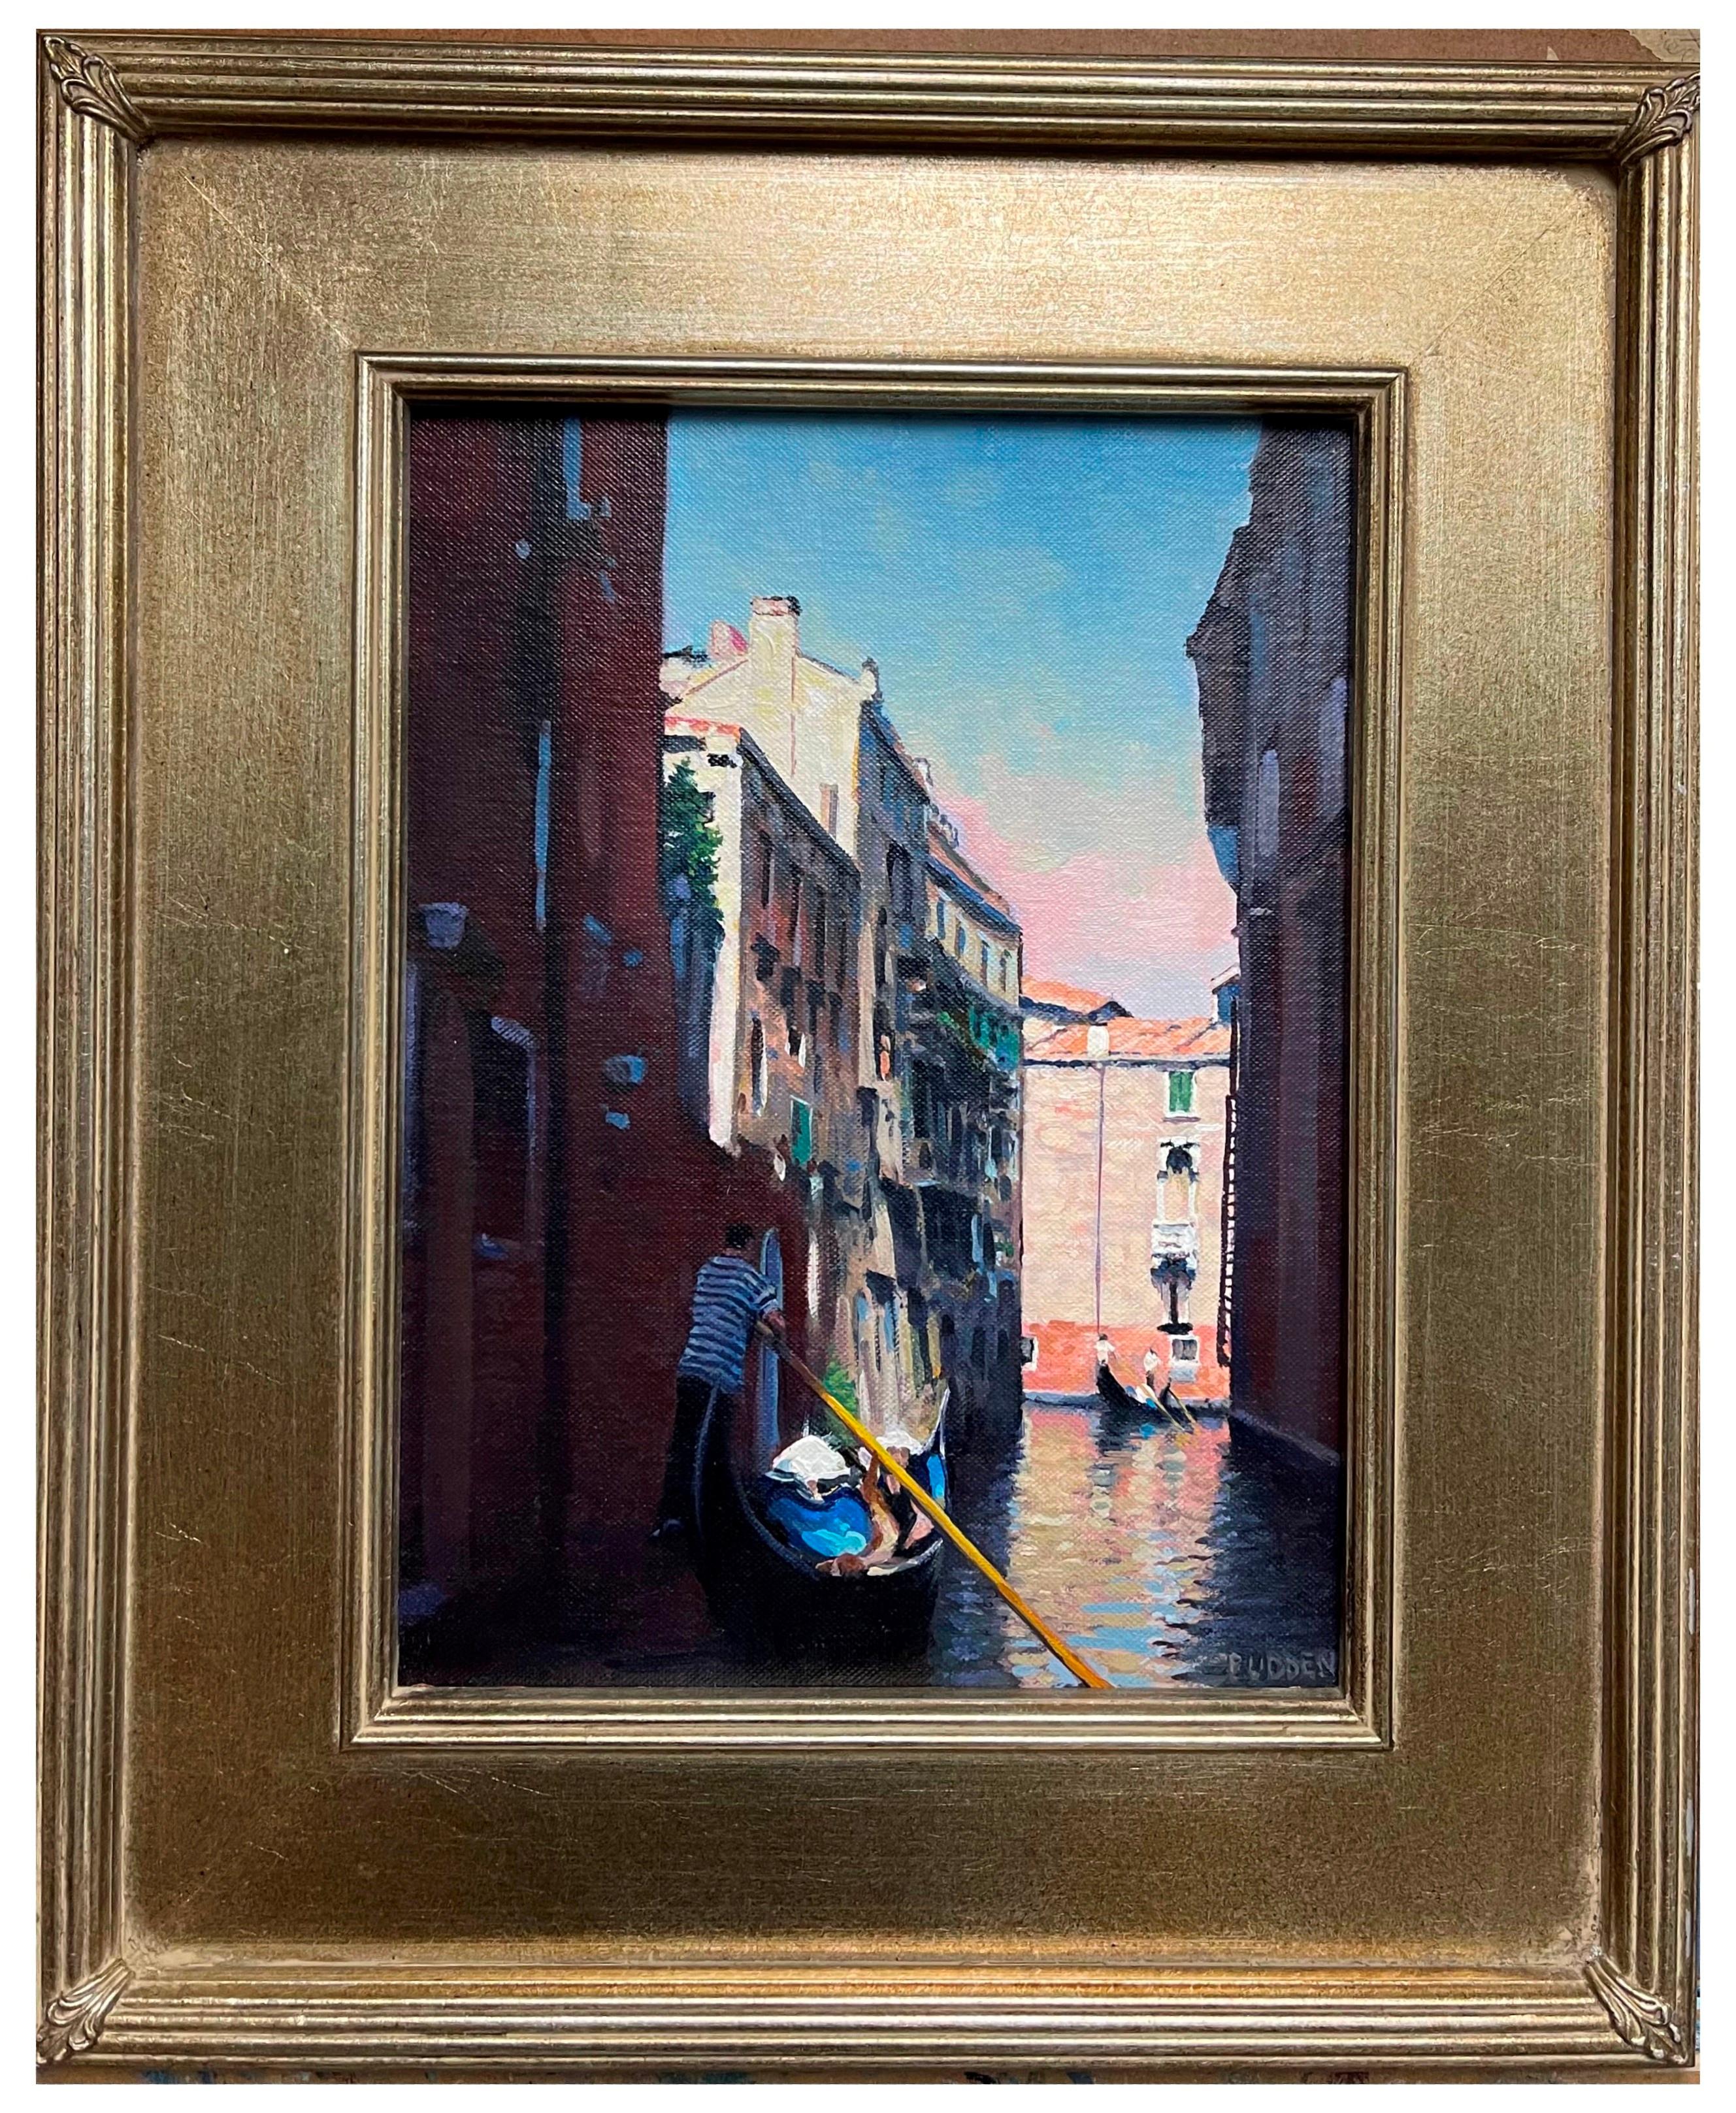 Schönes Licht, Venedig
Öl/Platte
12 x 9 ungerahmt, 17,5 x 14,5 gerahmt
Beautiful Light, Venedig ist ein Ölgemälde auf einer Tafel des preisgekrönten zeitgenössischen Künstlers Michael Budden, das eine wunderbare, geschichtsträchtige Szene zeigt. Der